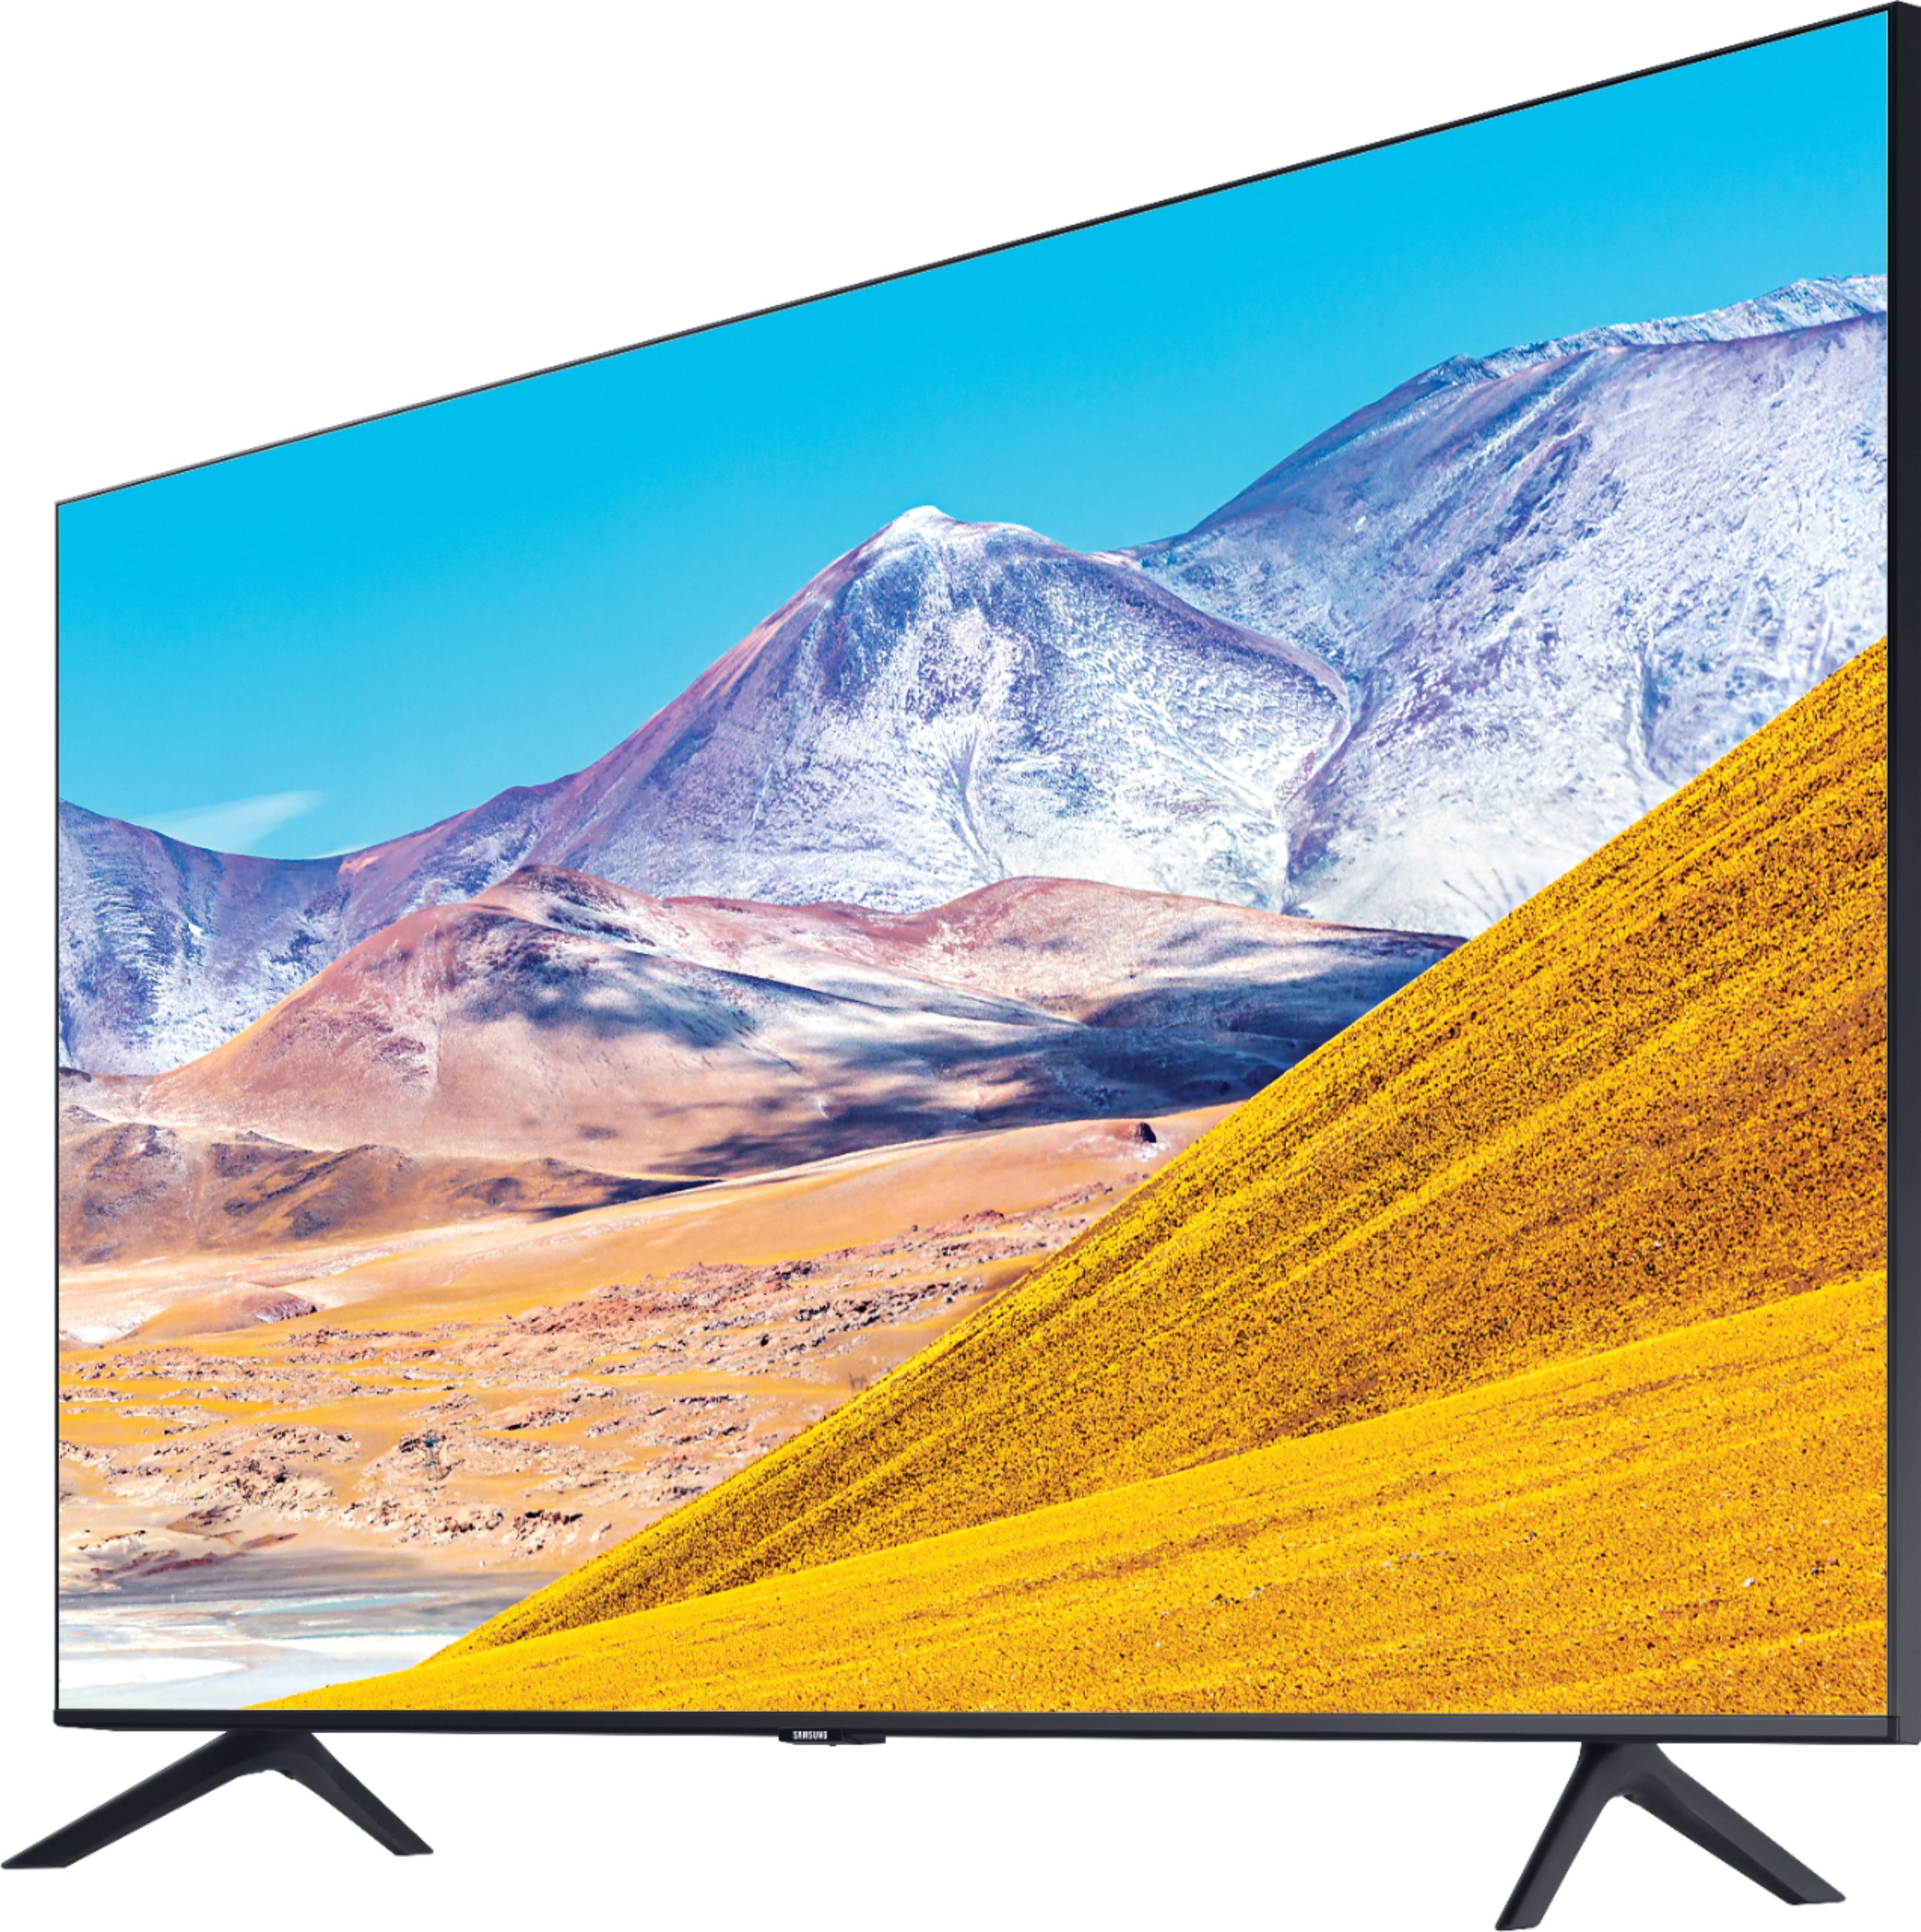 Left View: Samsung - 55" Class 8 Series LED 4K UHD Smart Tizen TV